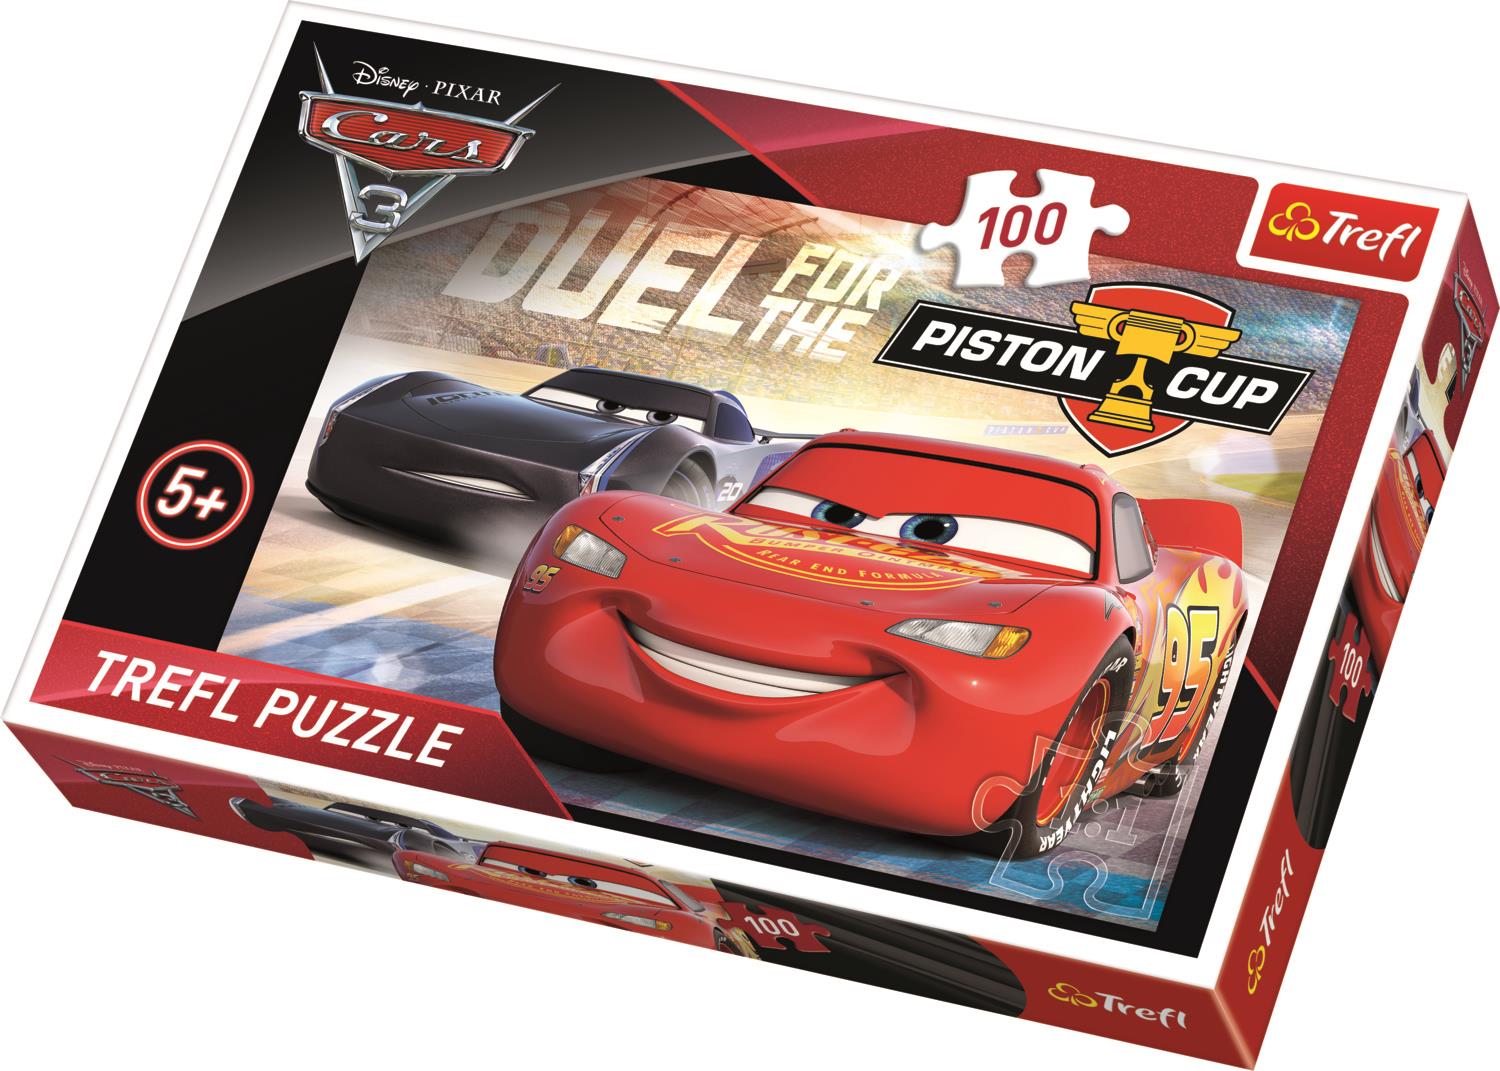 Trefl Çocuk Puzzle 16313 Cars 3 Piston Cup, Disney 100 Parça Puzzle